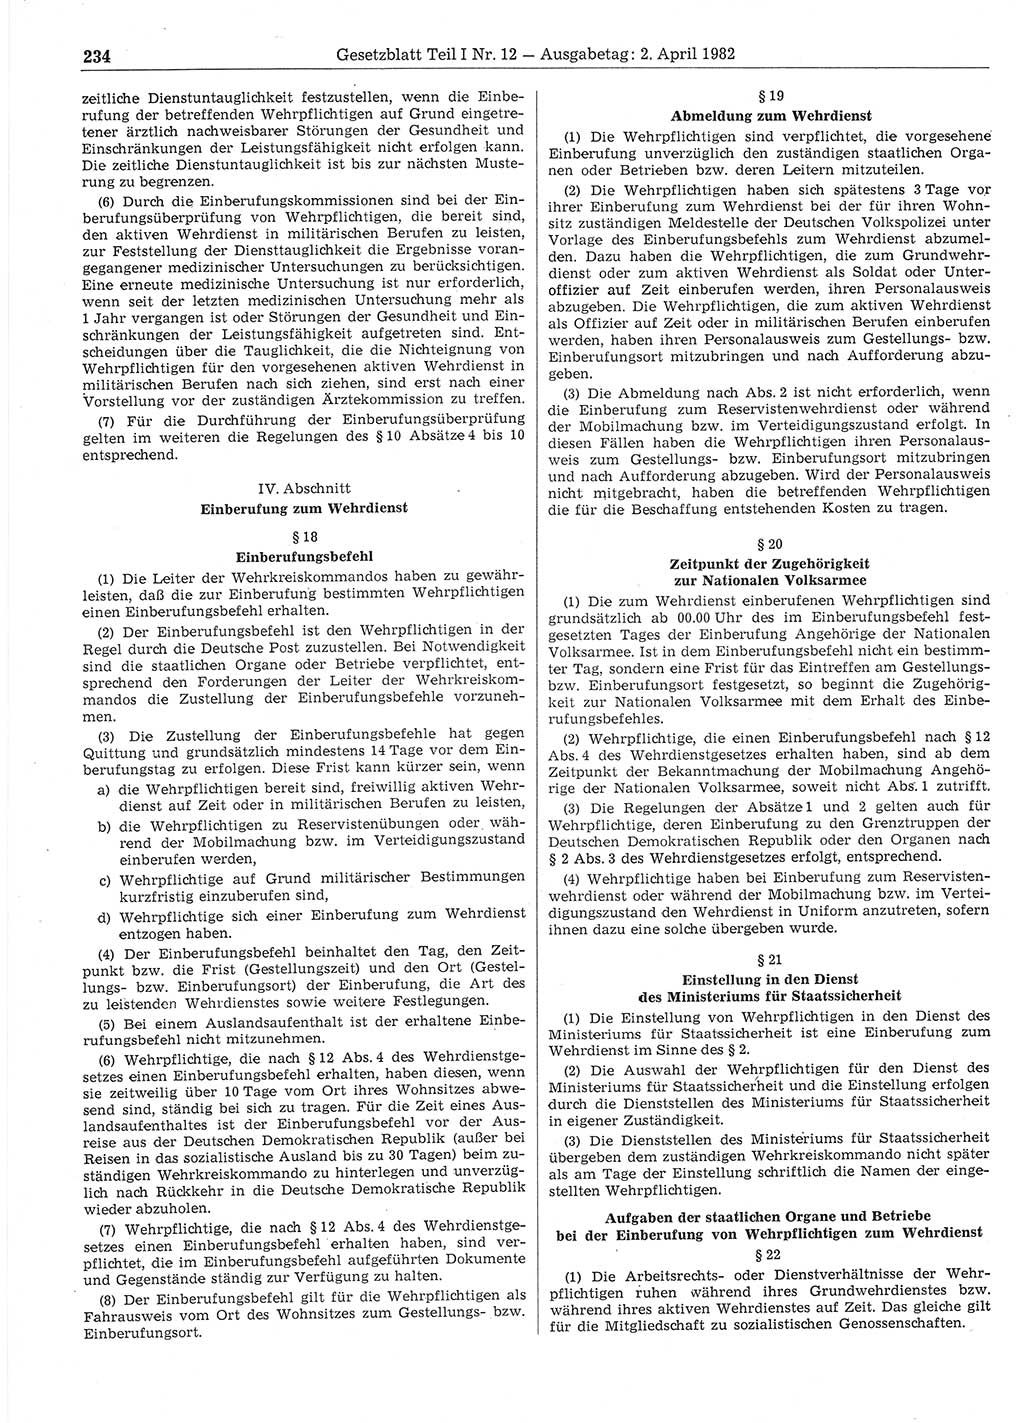 Gesetzblatt (GBl.) der Deutschen Demokratischen Republik (DDR) Teil Ⅰ 1982, Seite 234 (GBl. DDR Ⅰ 1982, S. 234)